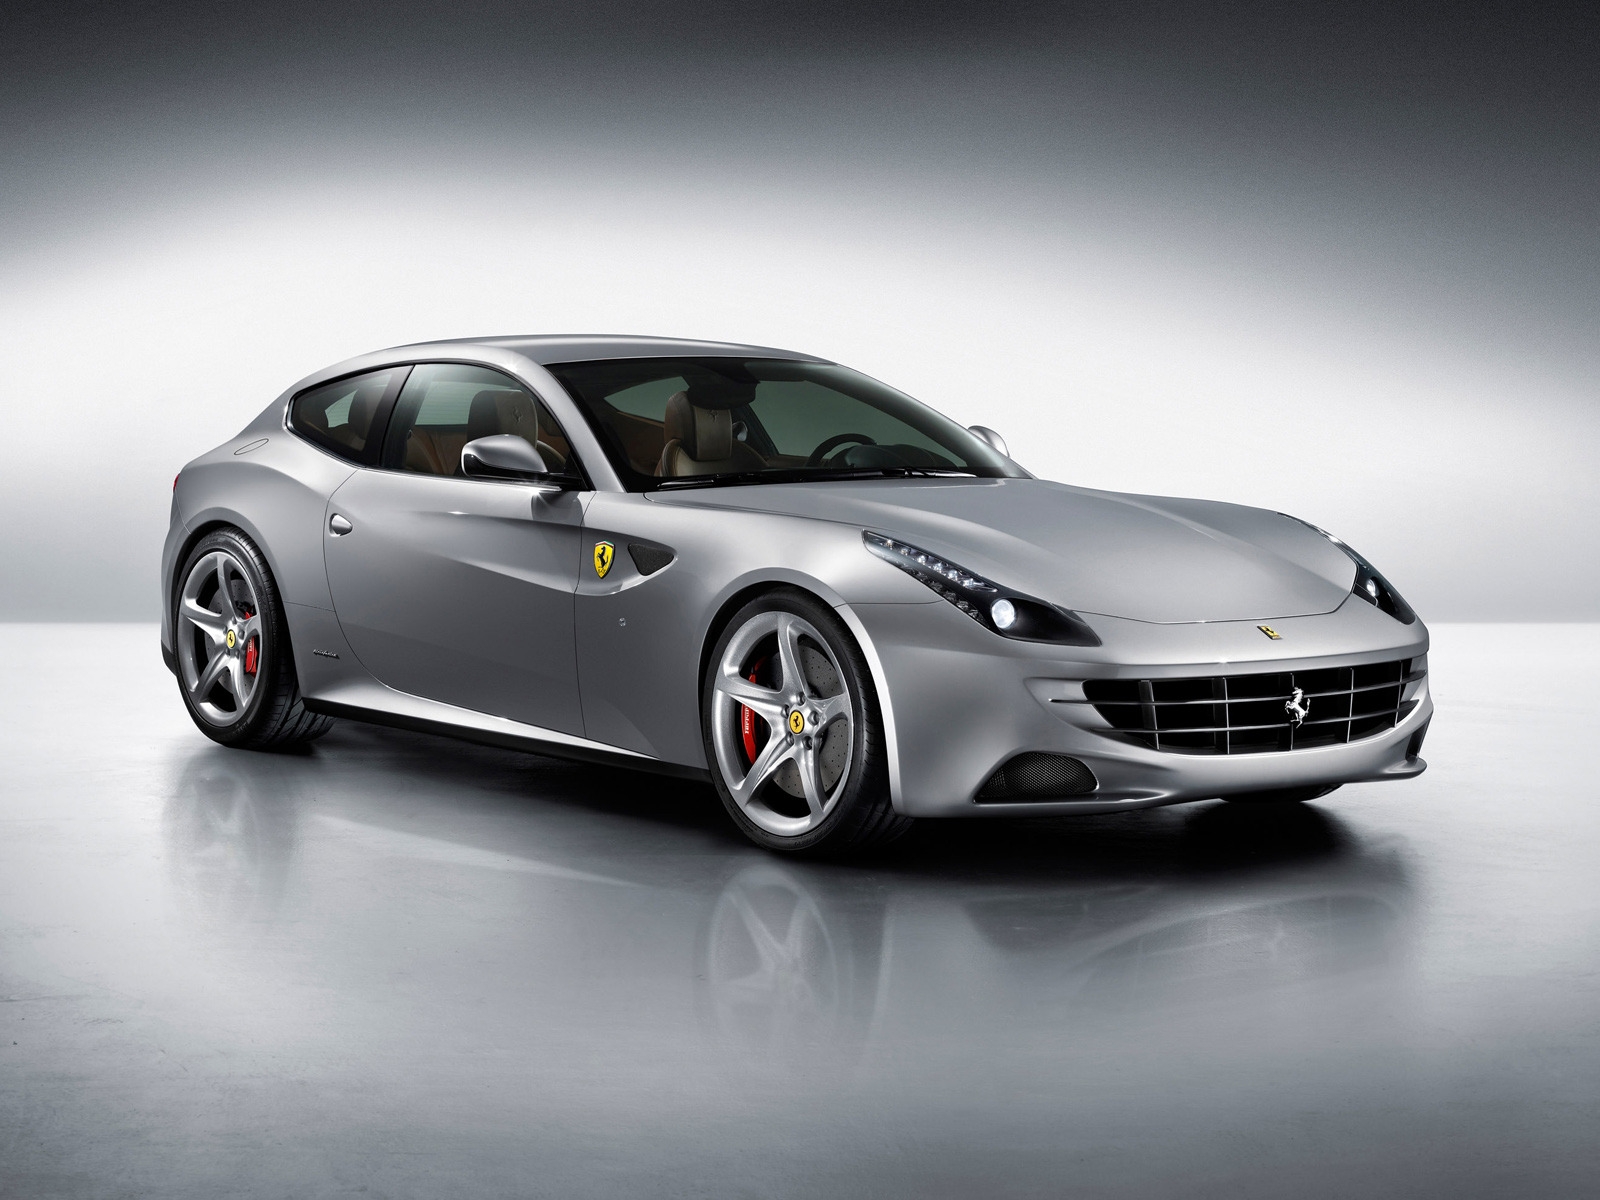 2012 Ferrari FF for 1600 x 1200 resolution